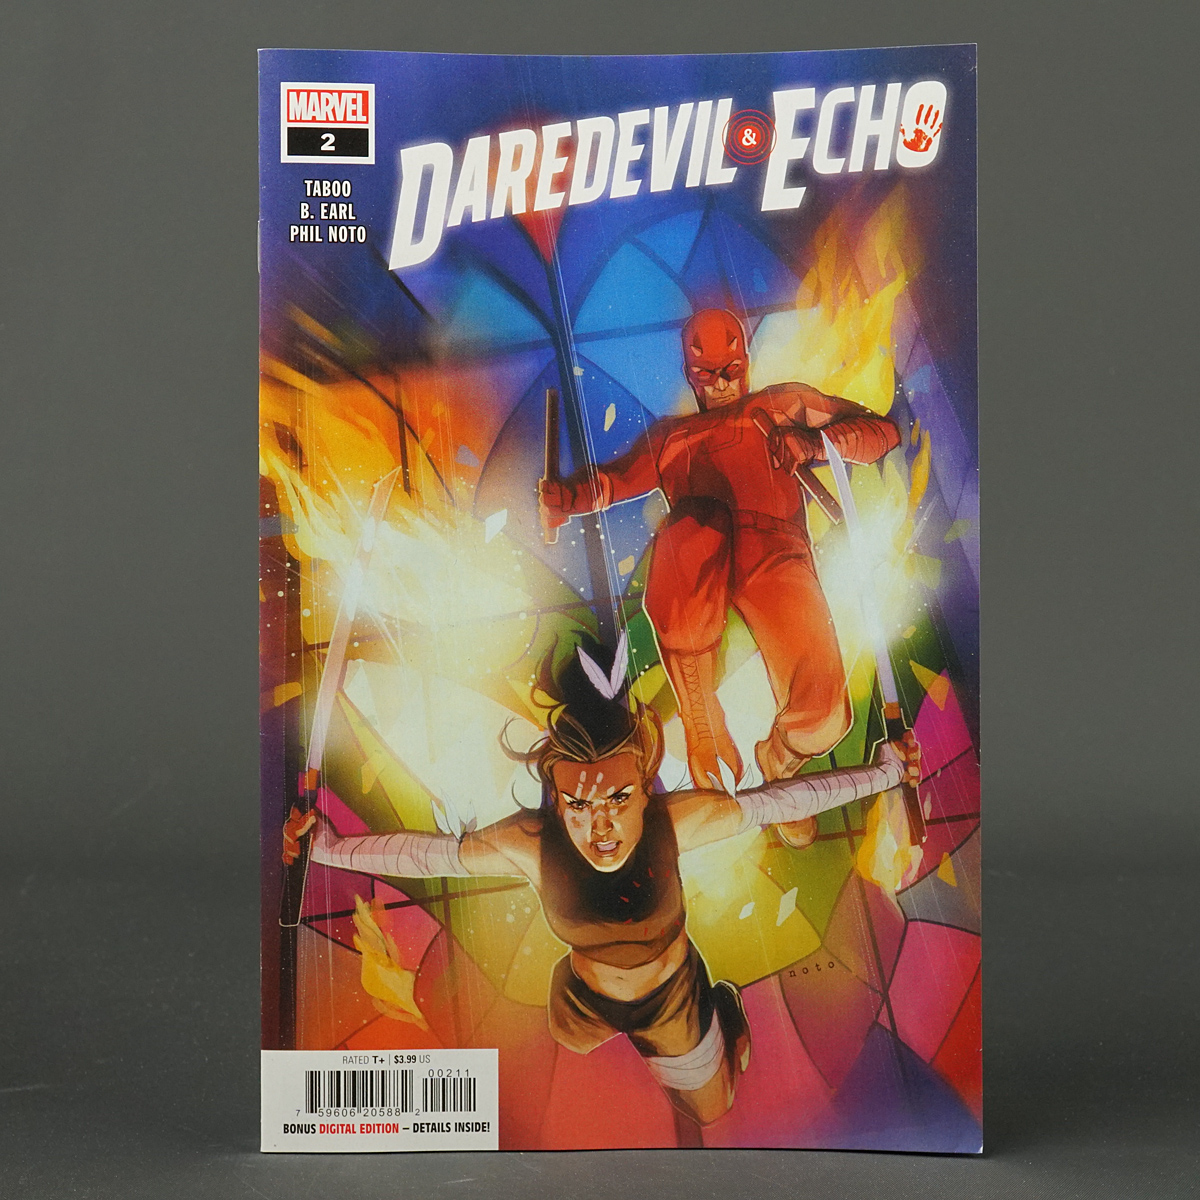 DAREDEVIL + ECHO #2 Marvel Comics 2023 APR230730 (A/CA) Noto (W) Taboo + B Earl